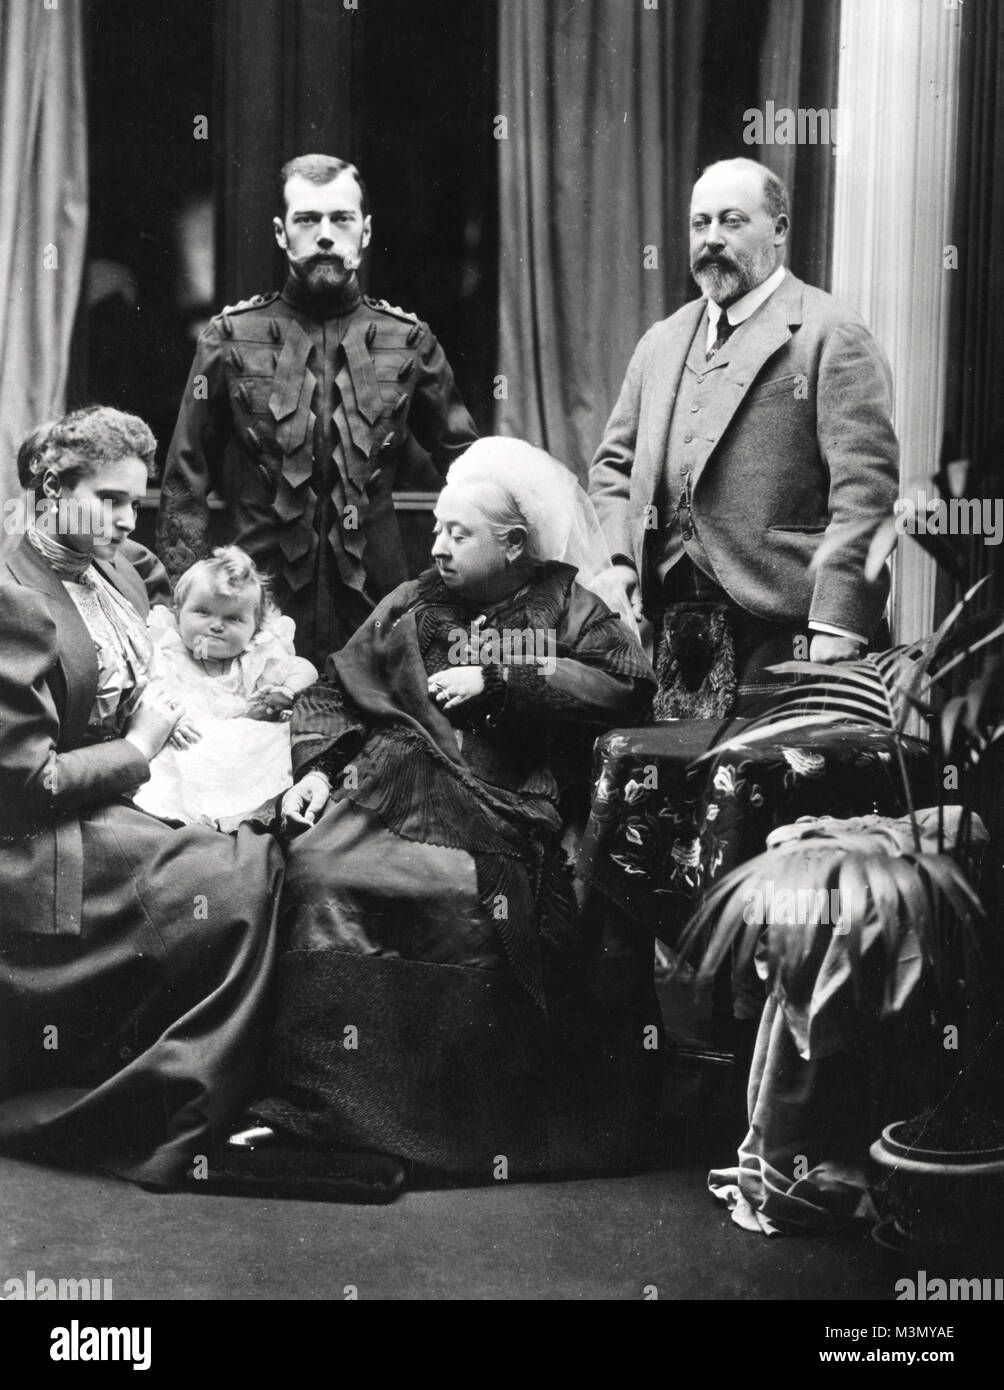 Victoria, Königin des Vereinigten Königreichs, Balmoral Castle in Schottland, mit ihrem Sohn Albert Edward, Prinz von Wales (rechts), und Zar Nikolaus II. von Russland (links). Auf der linken Seite sitzt Alexandra, Zarin von Russland, Holding ihr Töchterchen Großfürstin Olga. Stockfoto